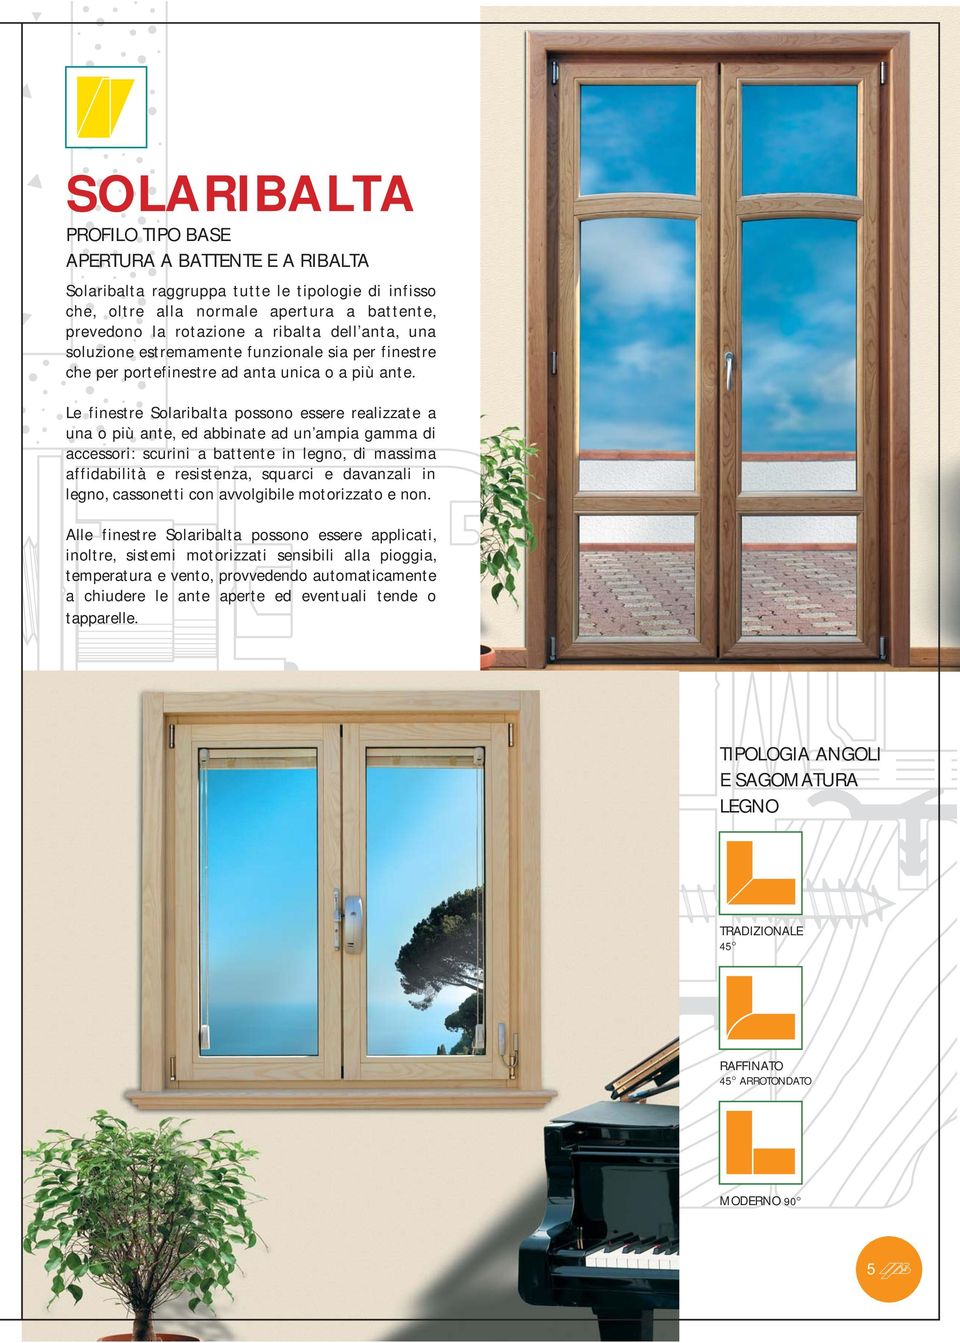 Le finestre Solaribalta possono essere realizzate a una o più ante, ed abbinate ad un ampia gamma di accessori: scurini a battente in legno, di massima affidabilità e resistenza, squarci e davanzali